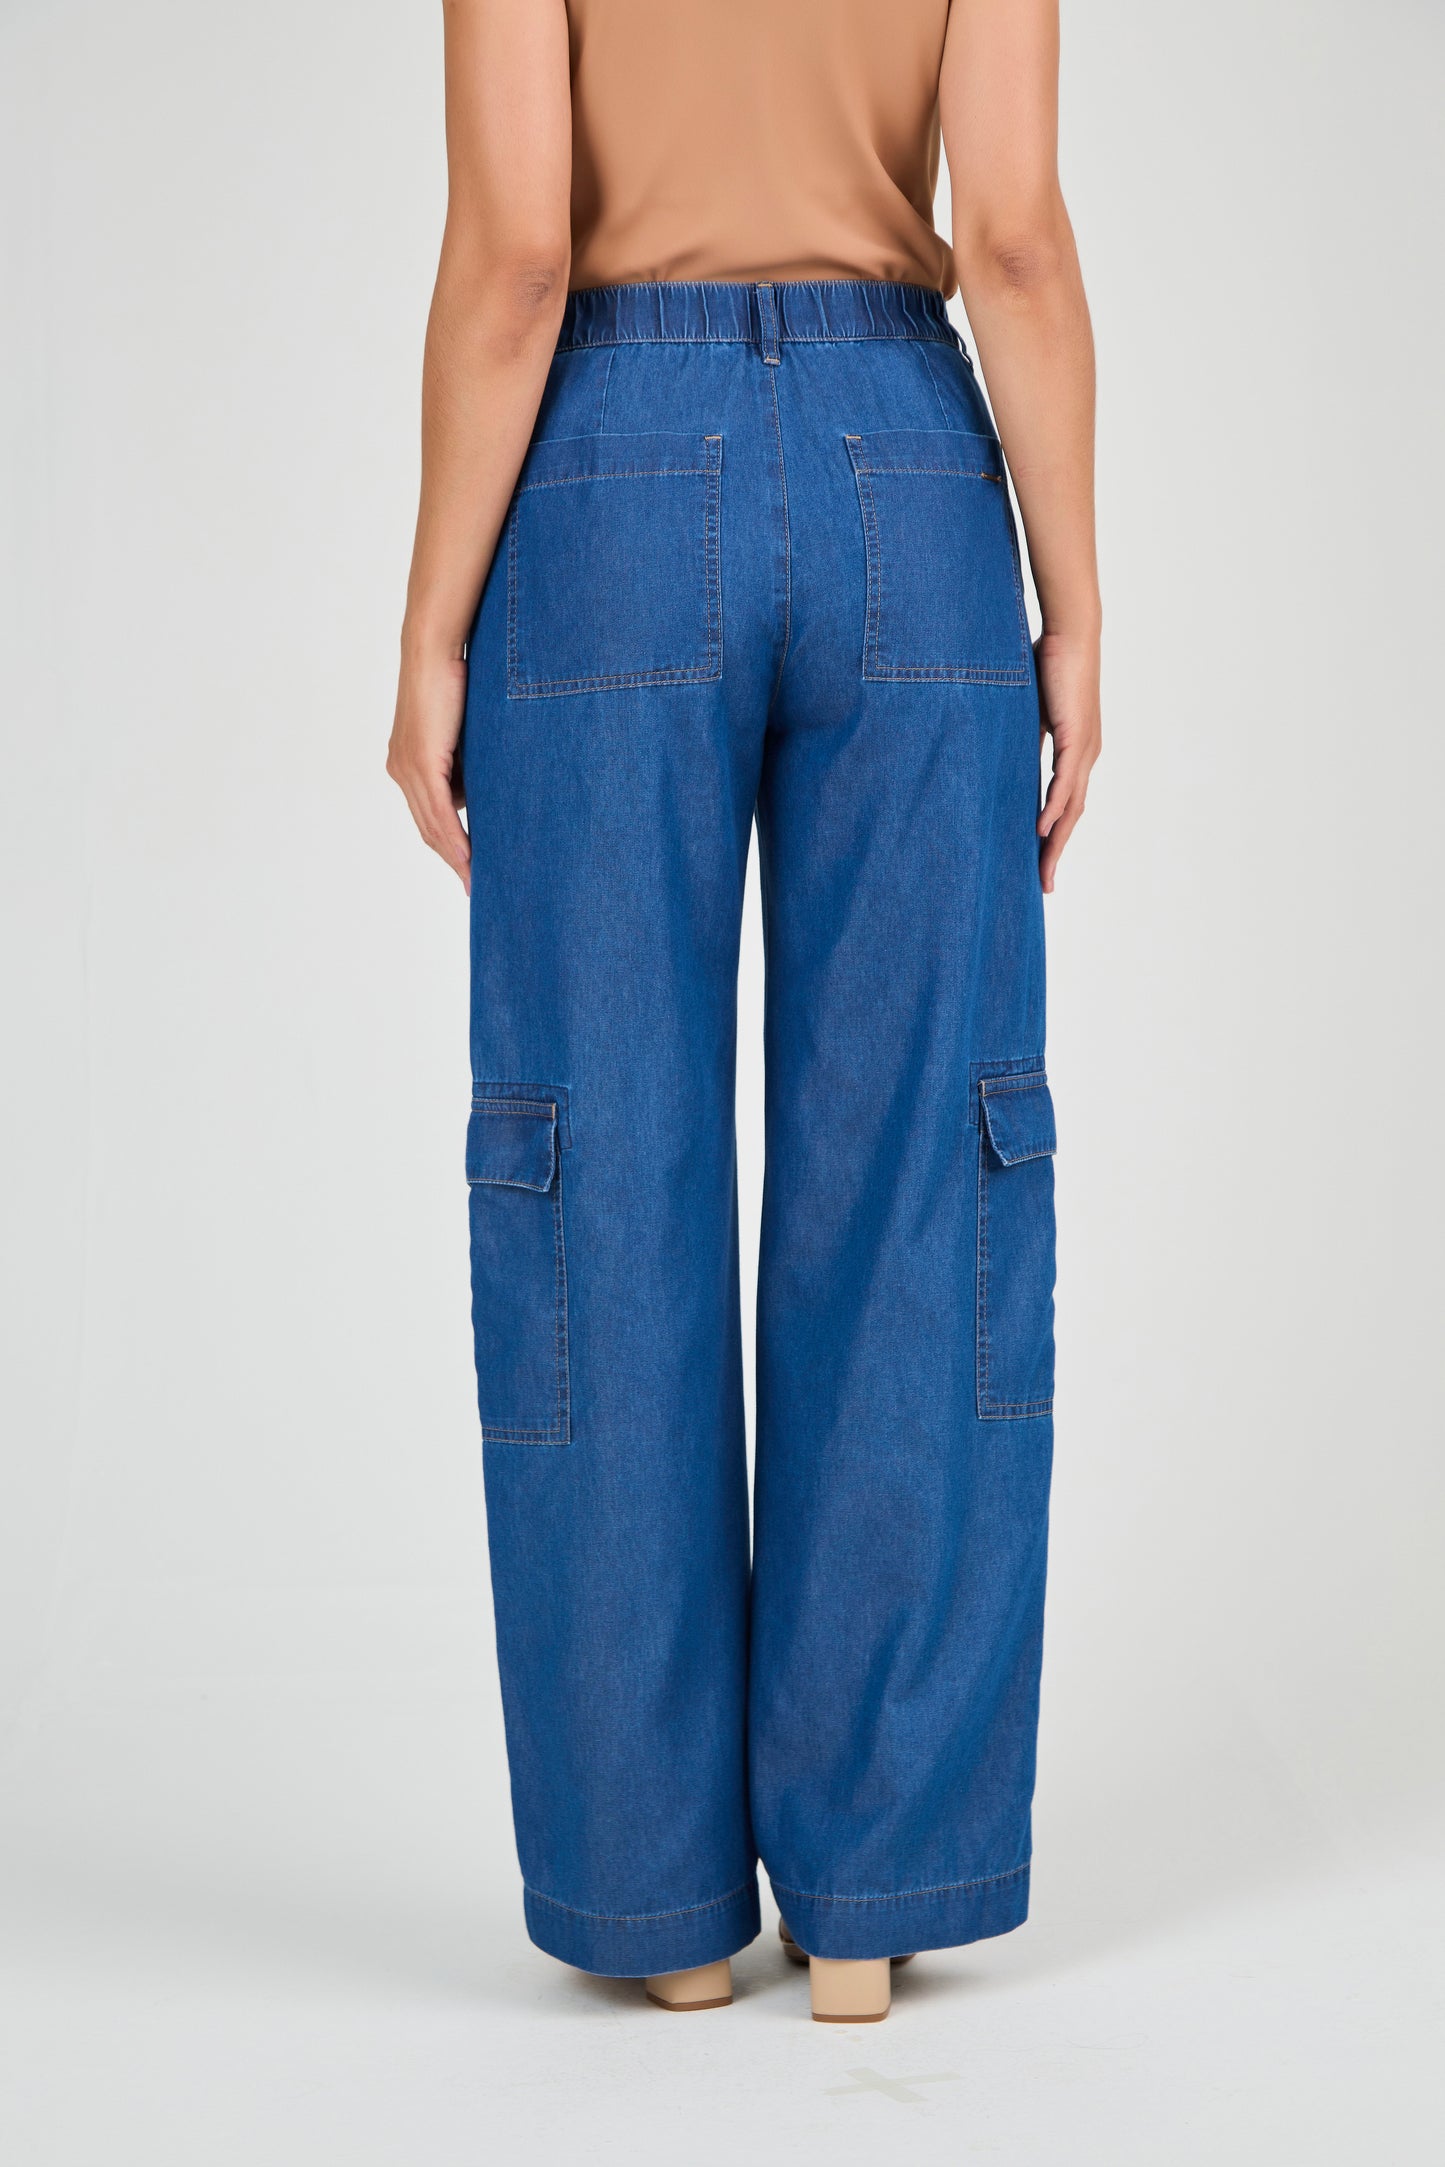 calça jeans pantalona cintura intermediária com bolsos sobrepostos